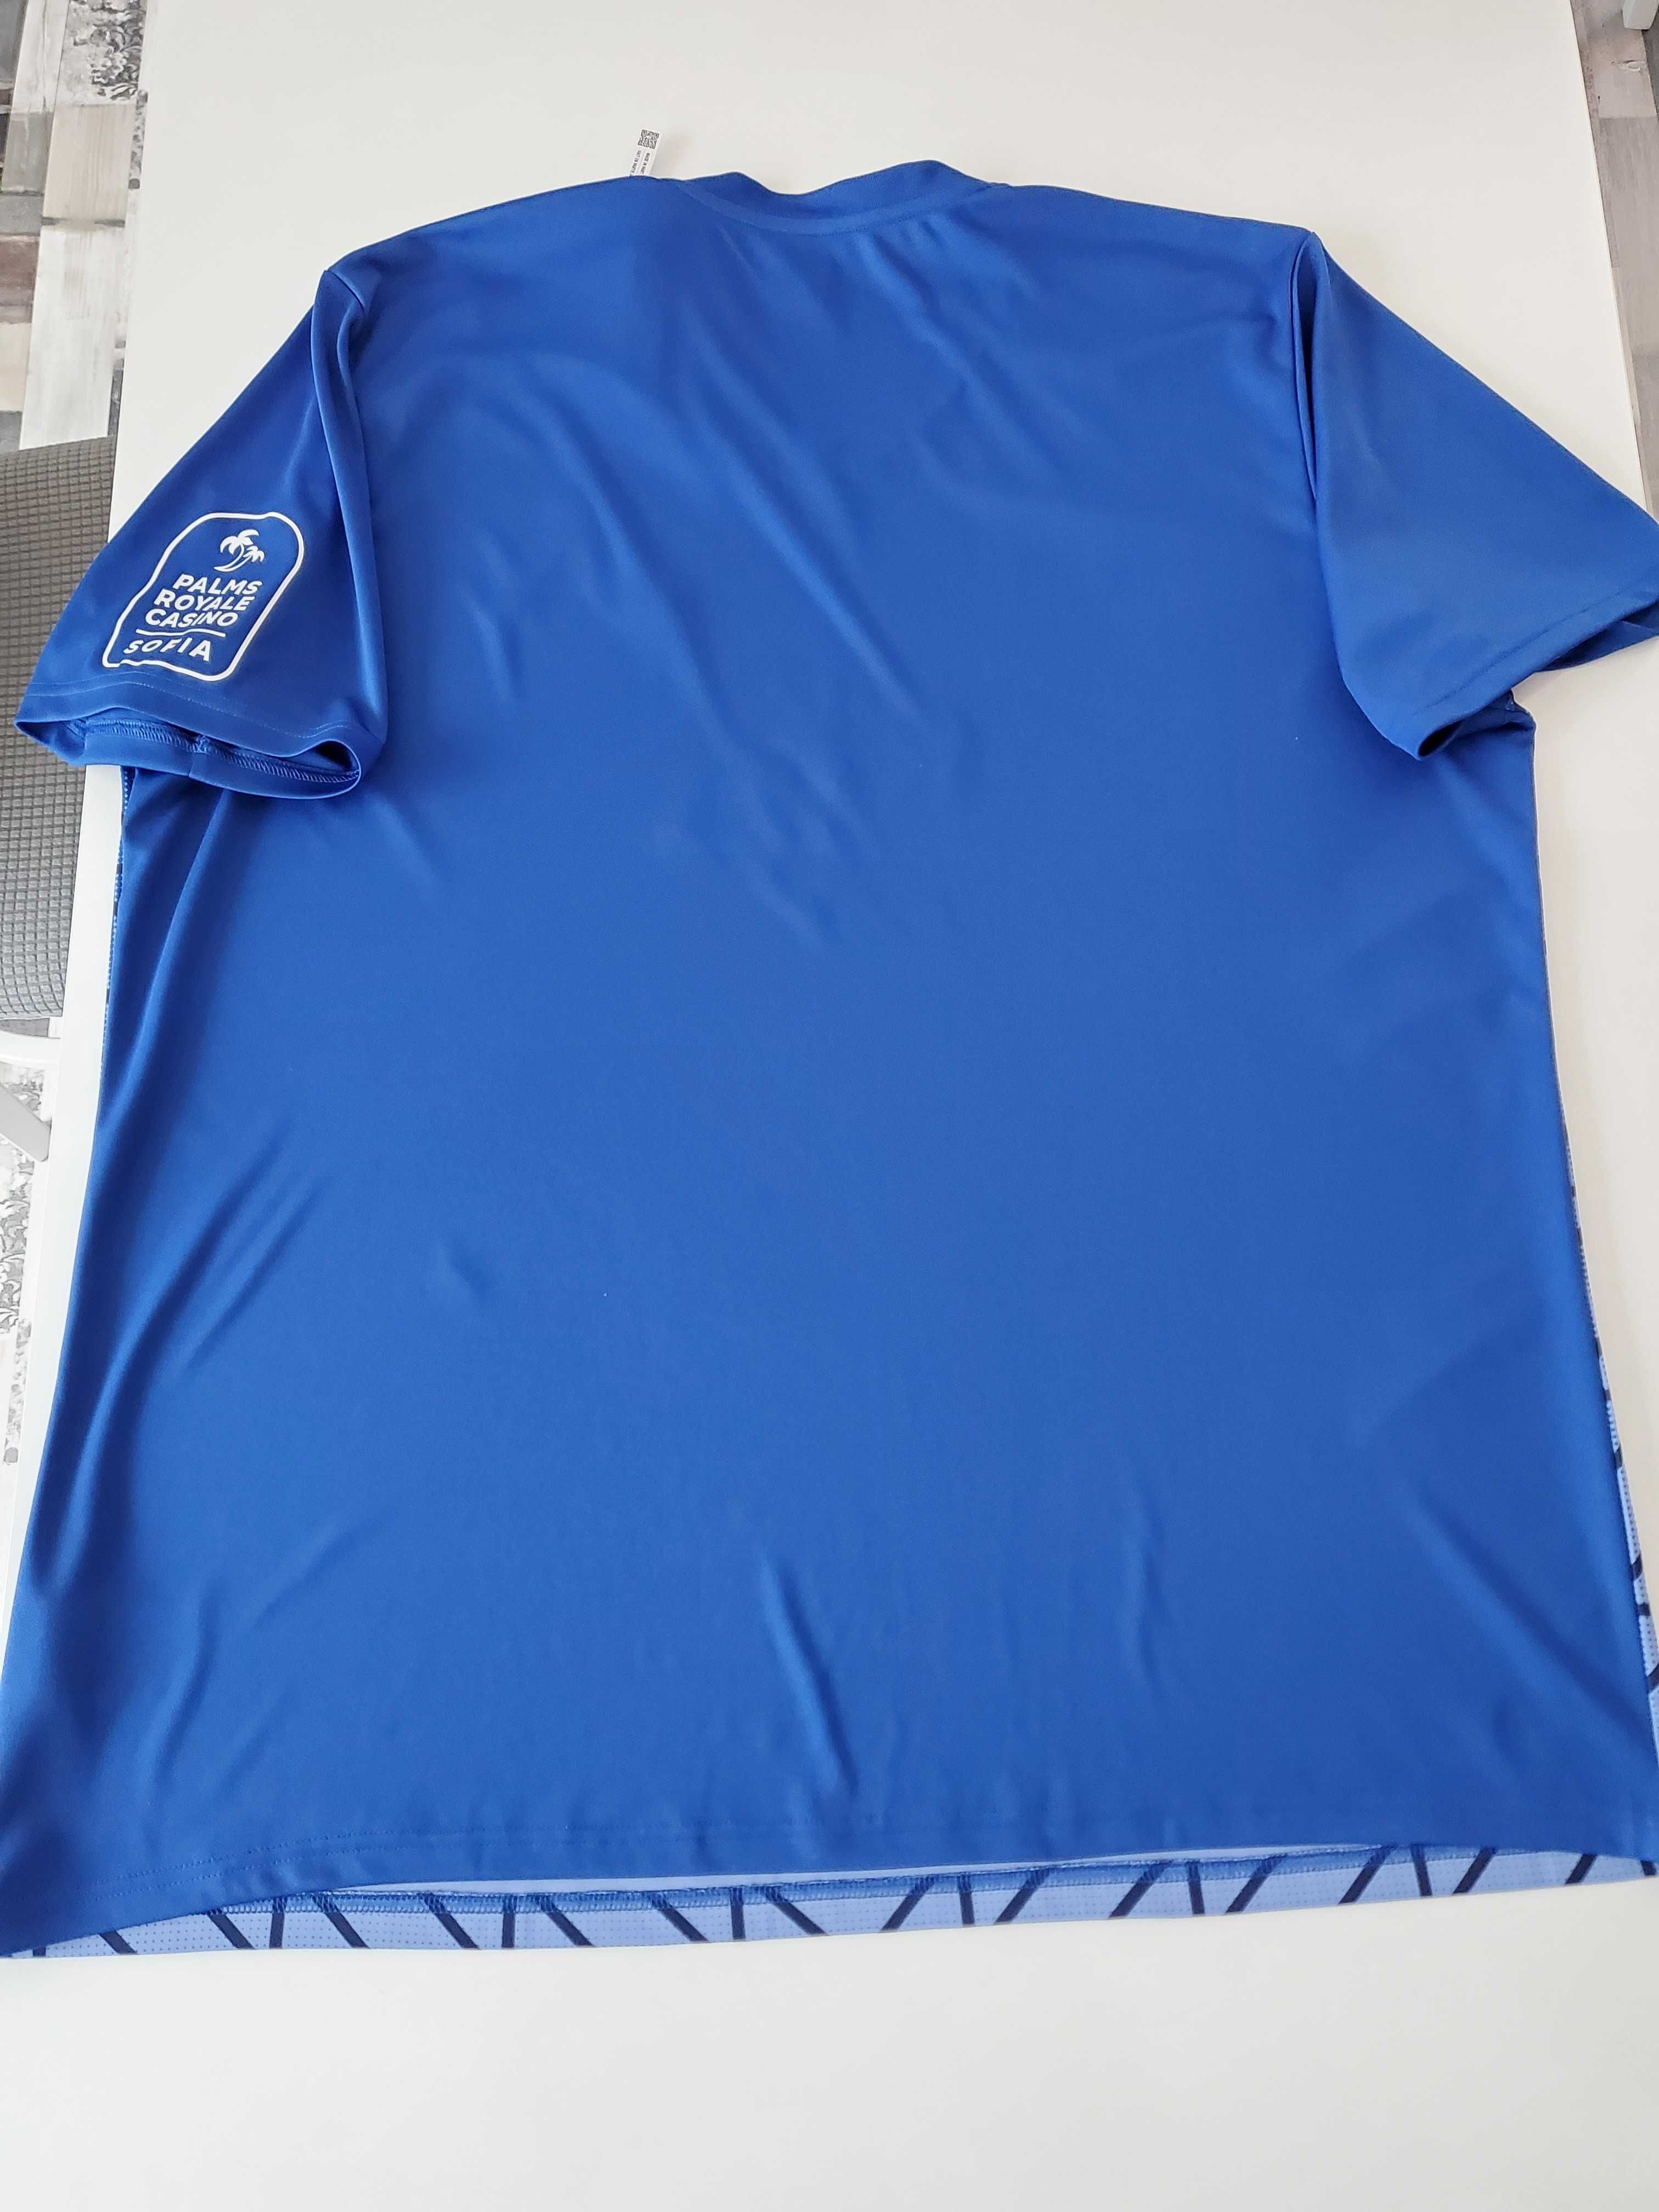 Футболна тениска на Левски с етикет- оригинал на Адидас